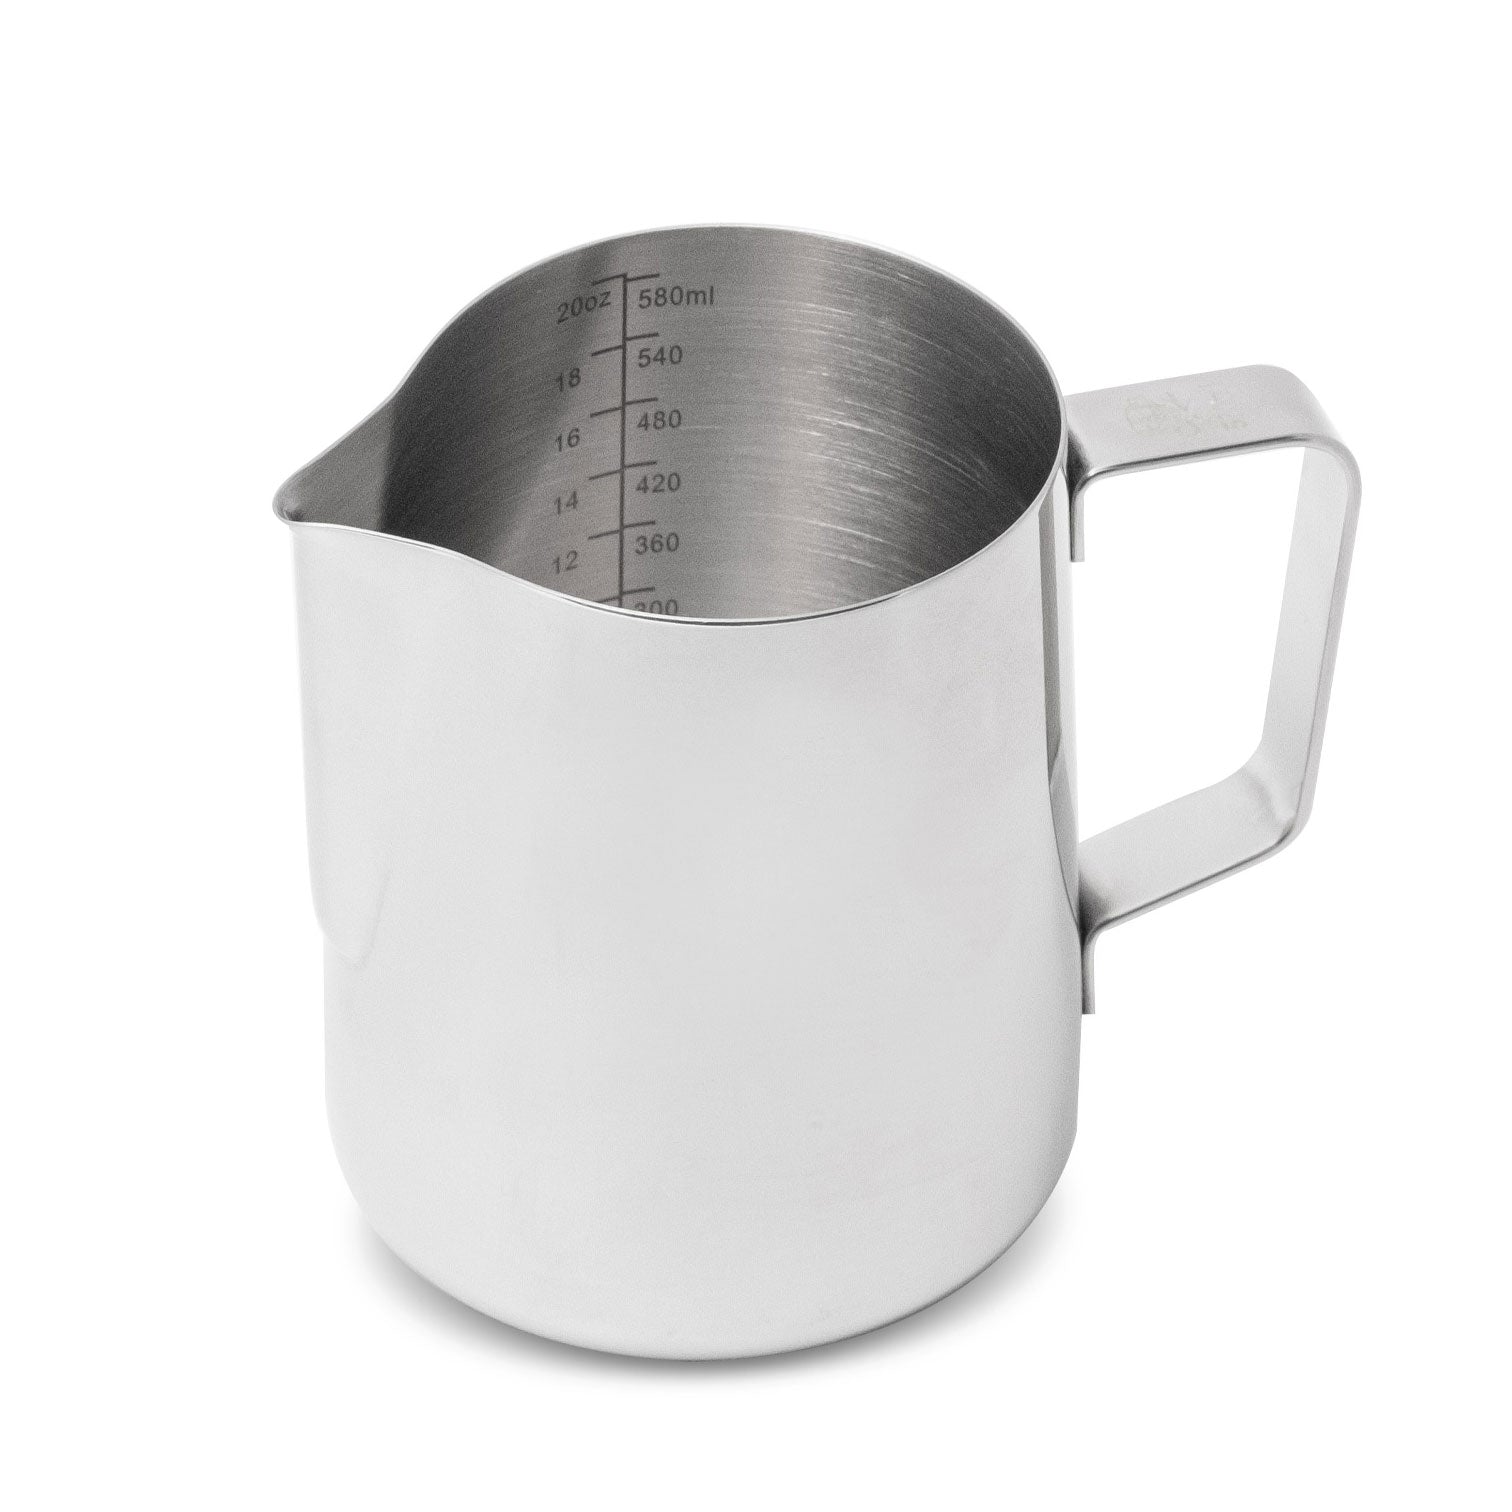 20oz milk pitcher – Store